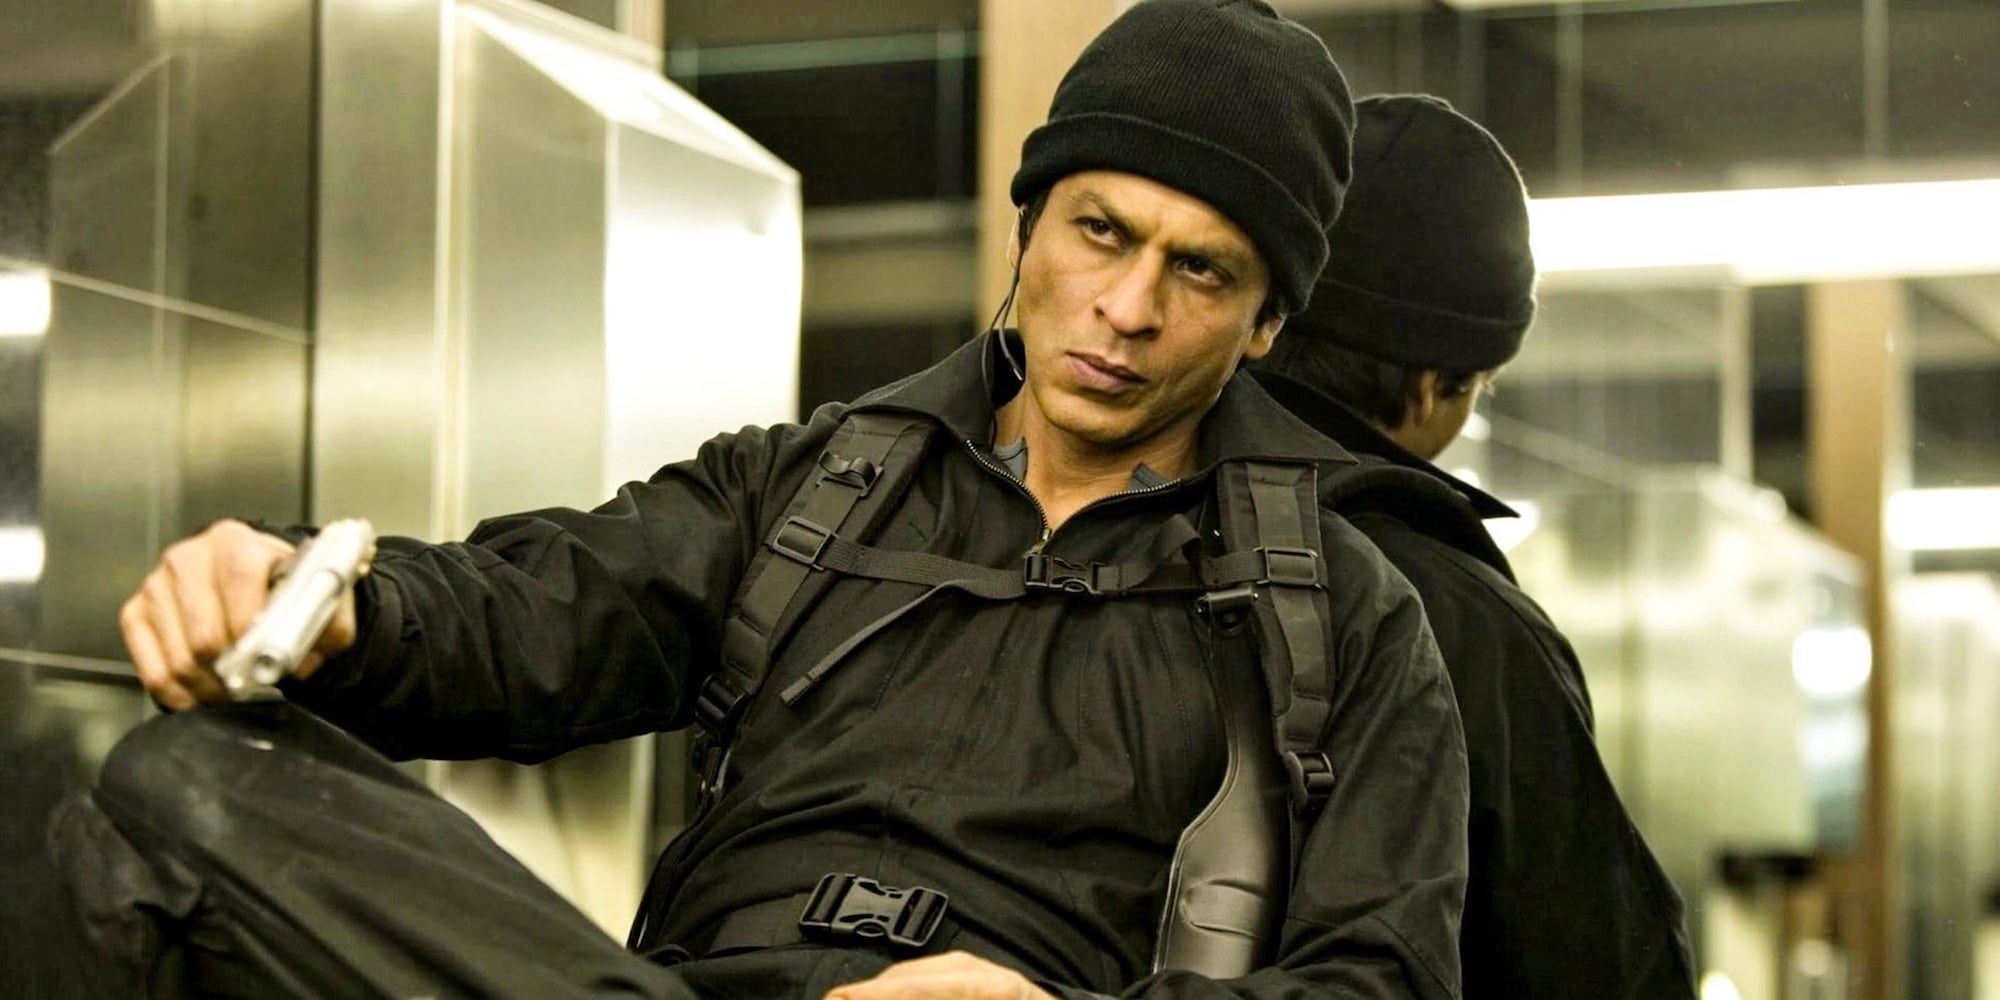 La próxima película de SRK romperá su increíble racha de 2023 (¡pero está bien!)